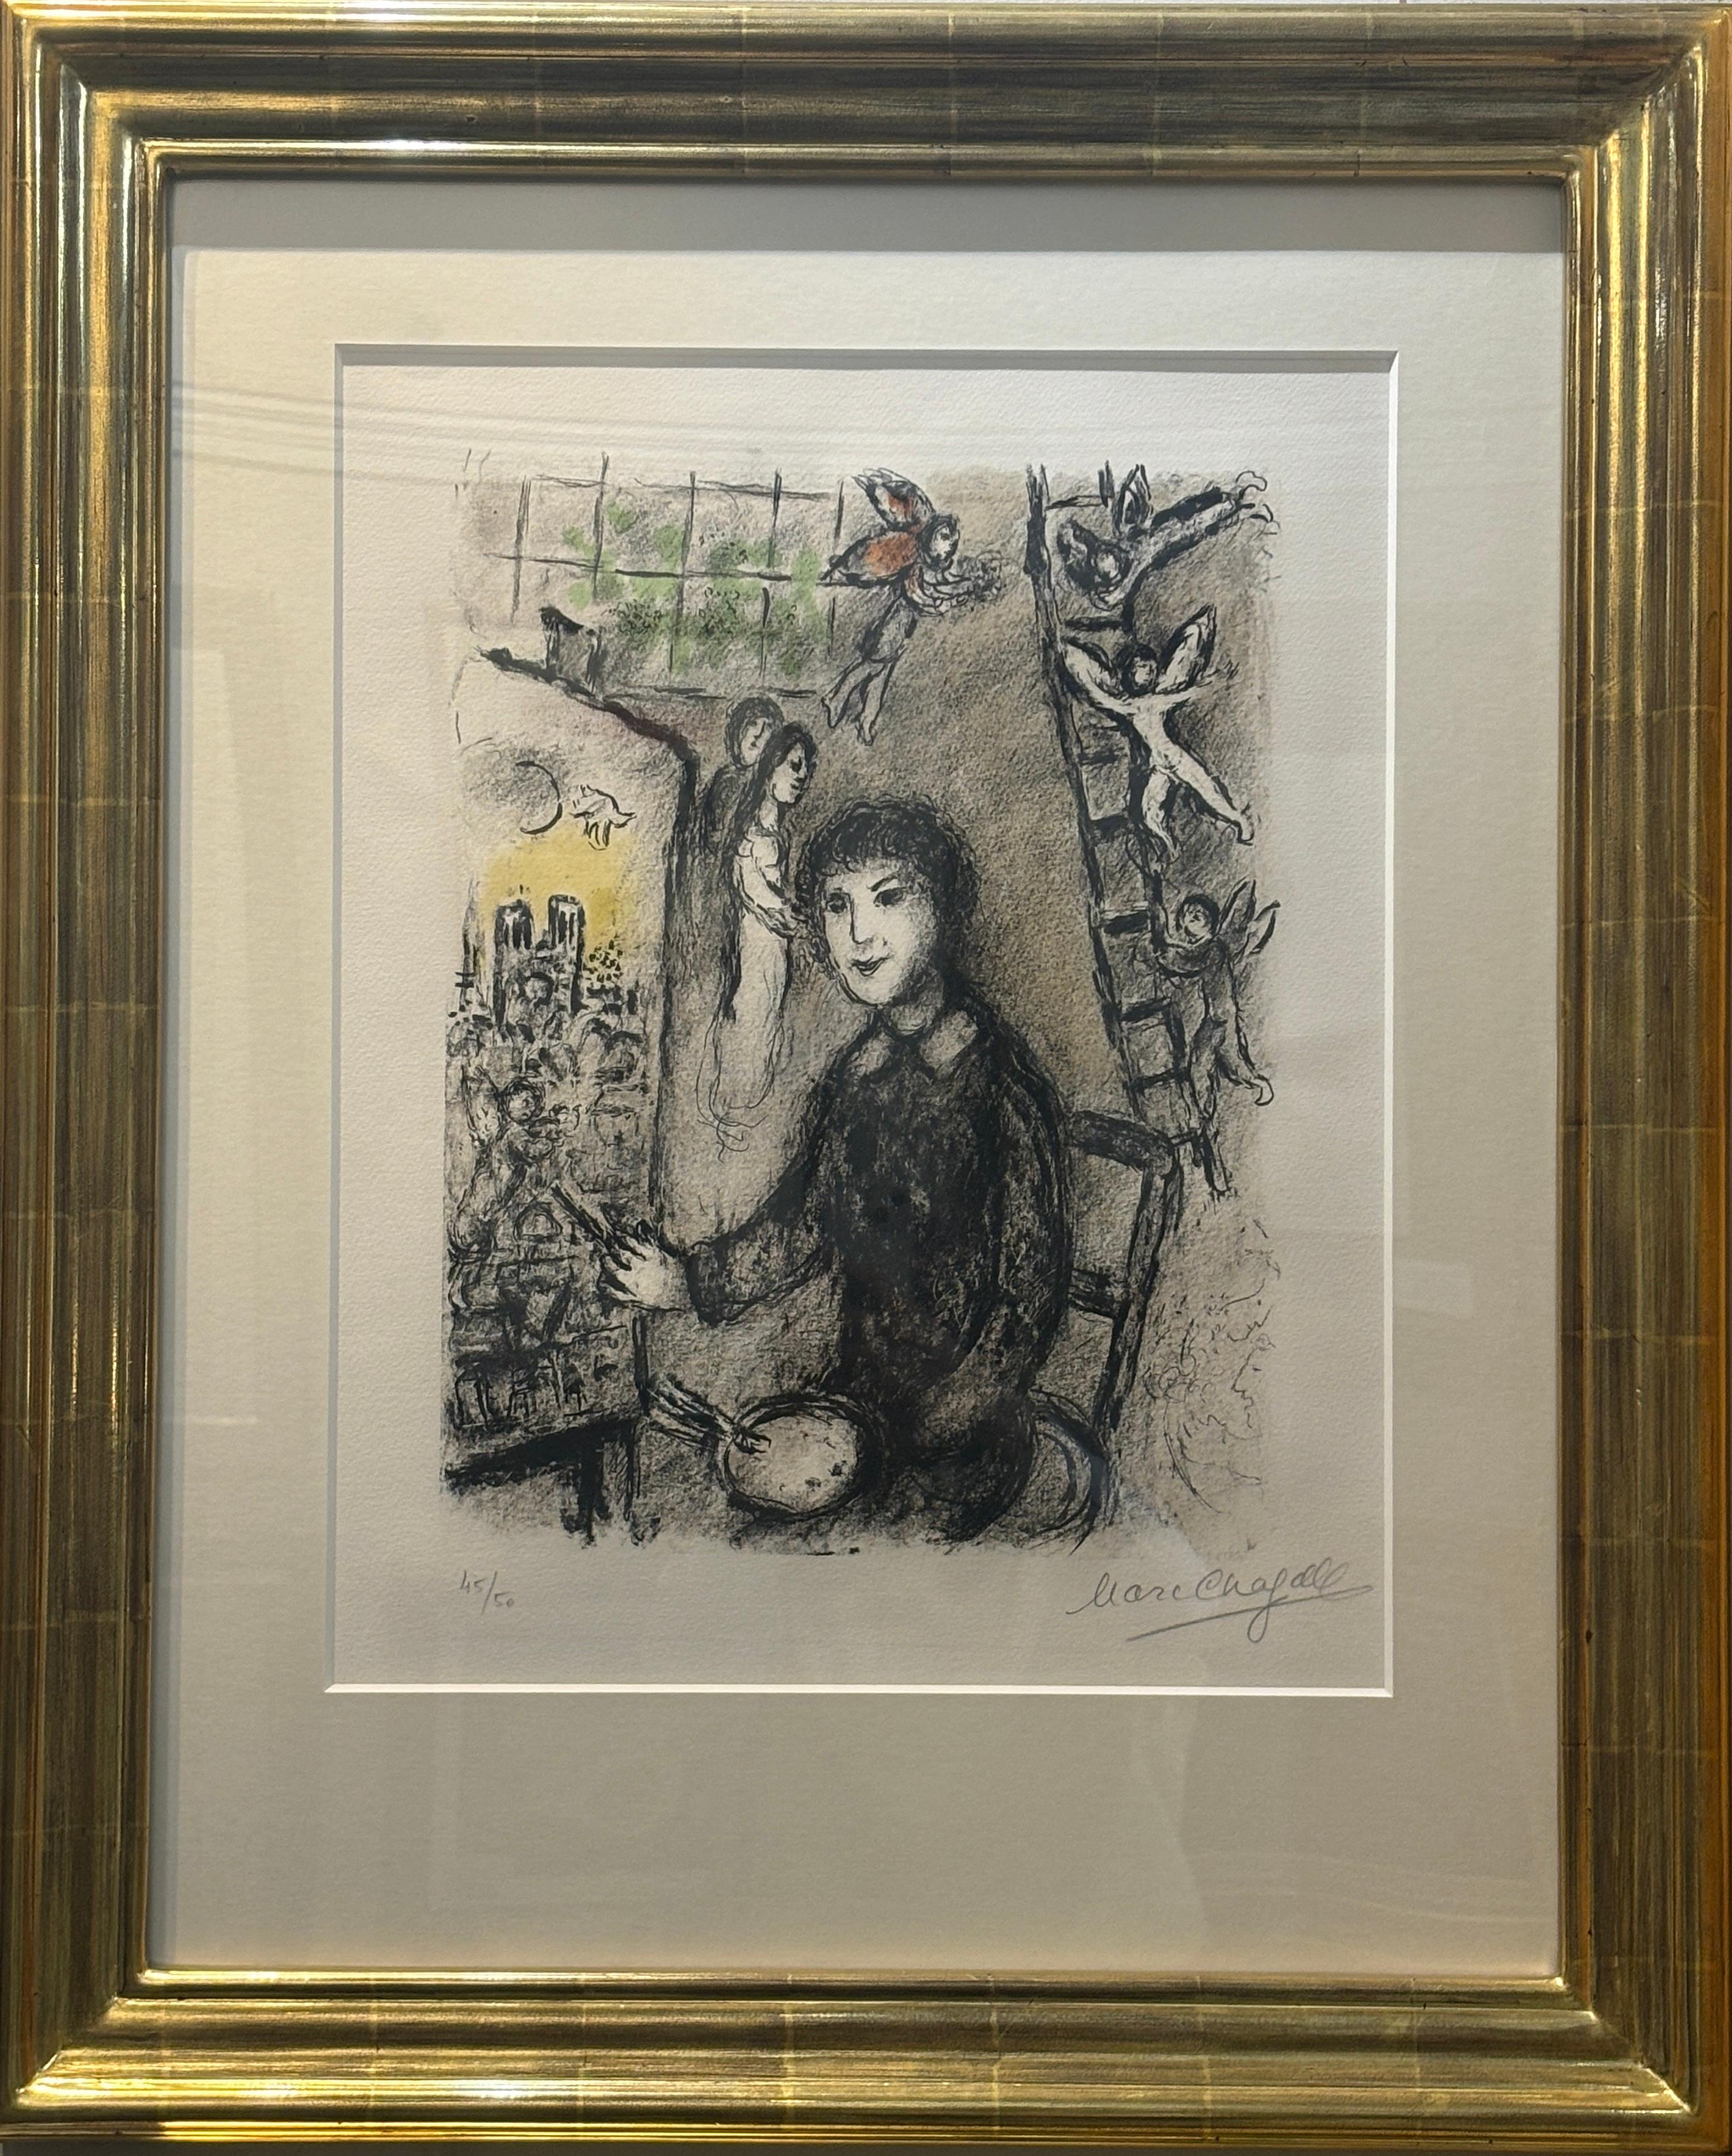 Le Peintre devant le Tableau - Print by Marc Chagall